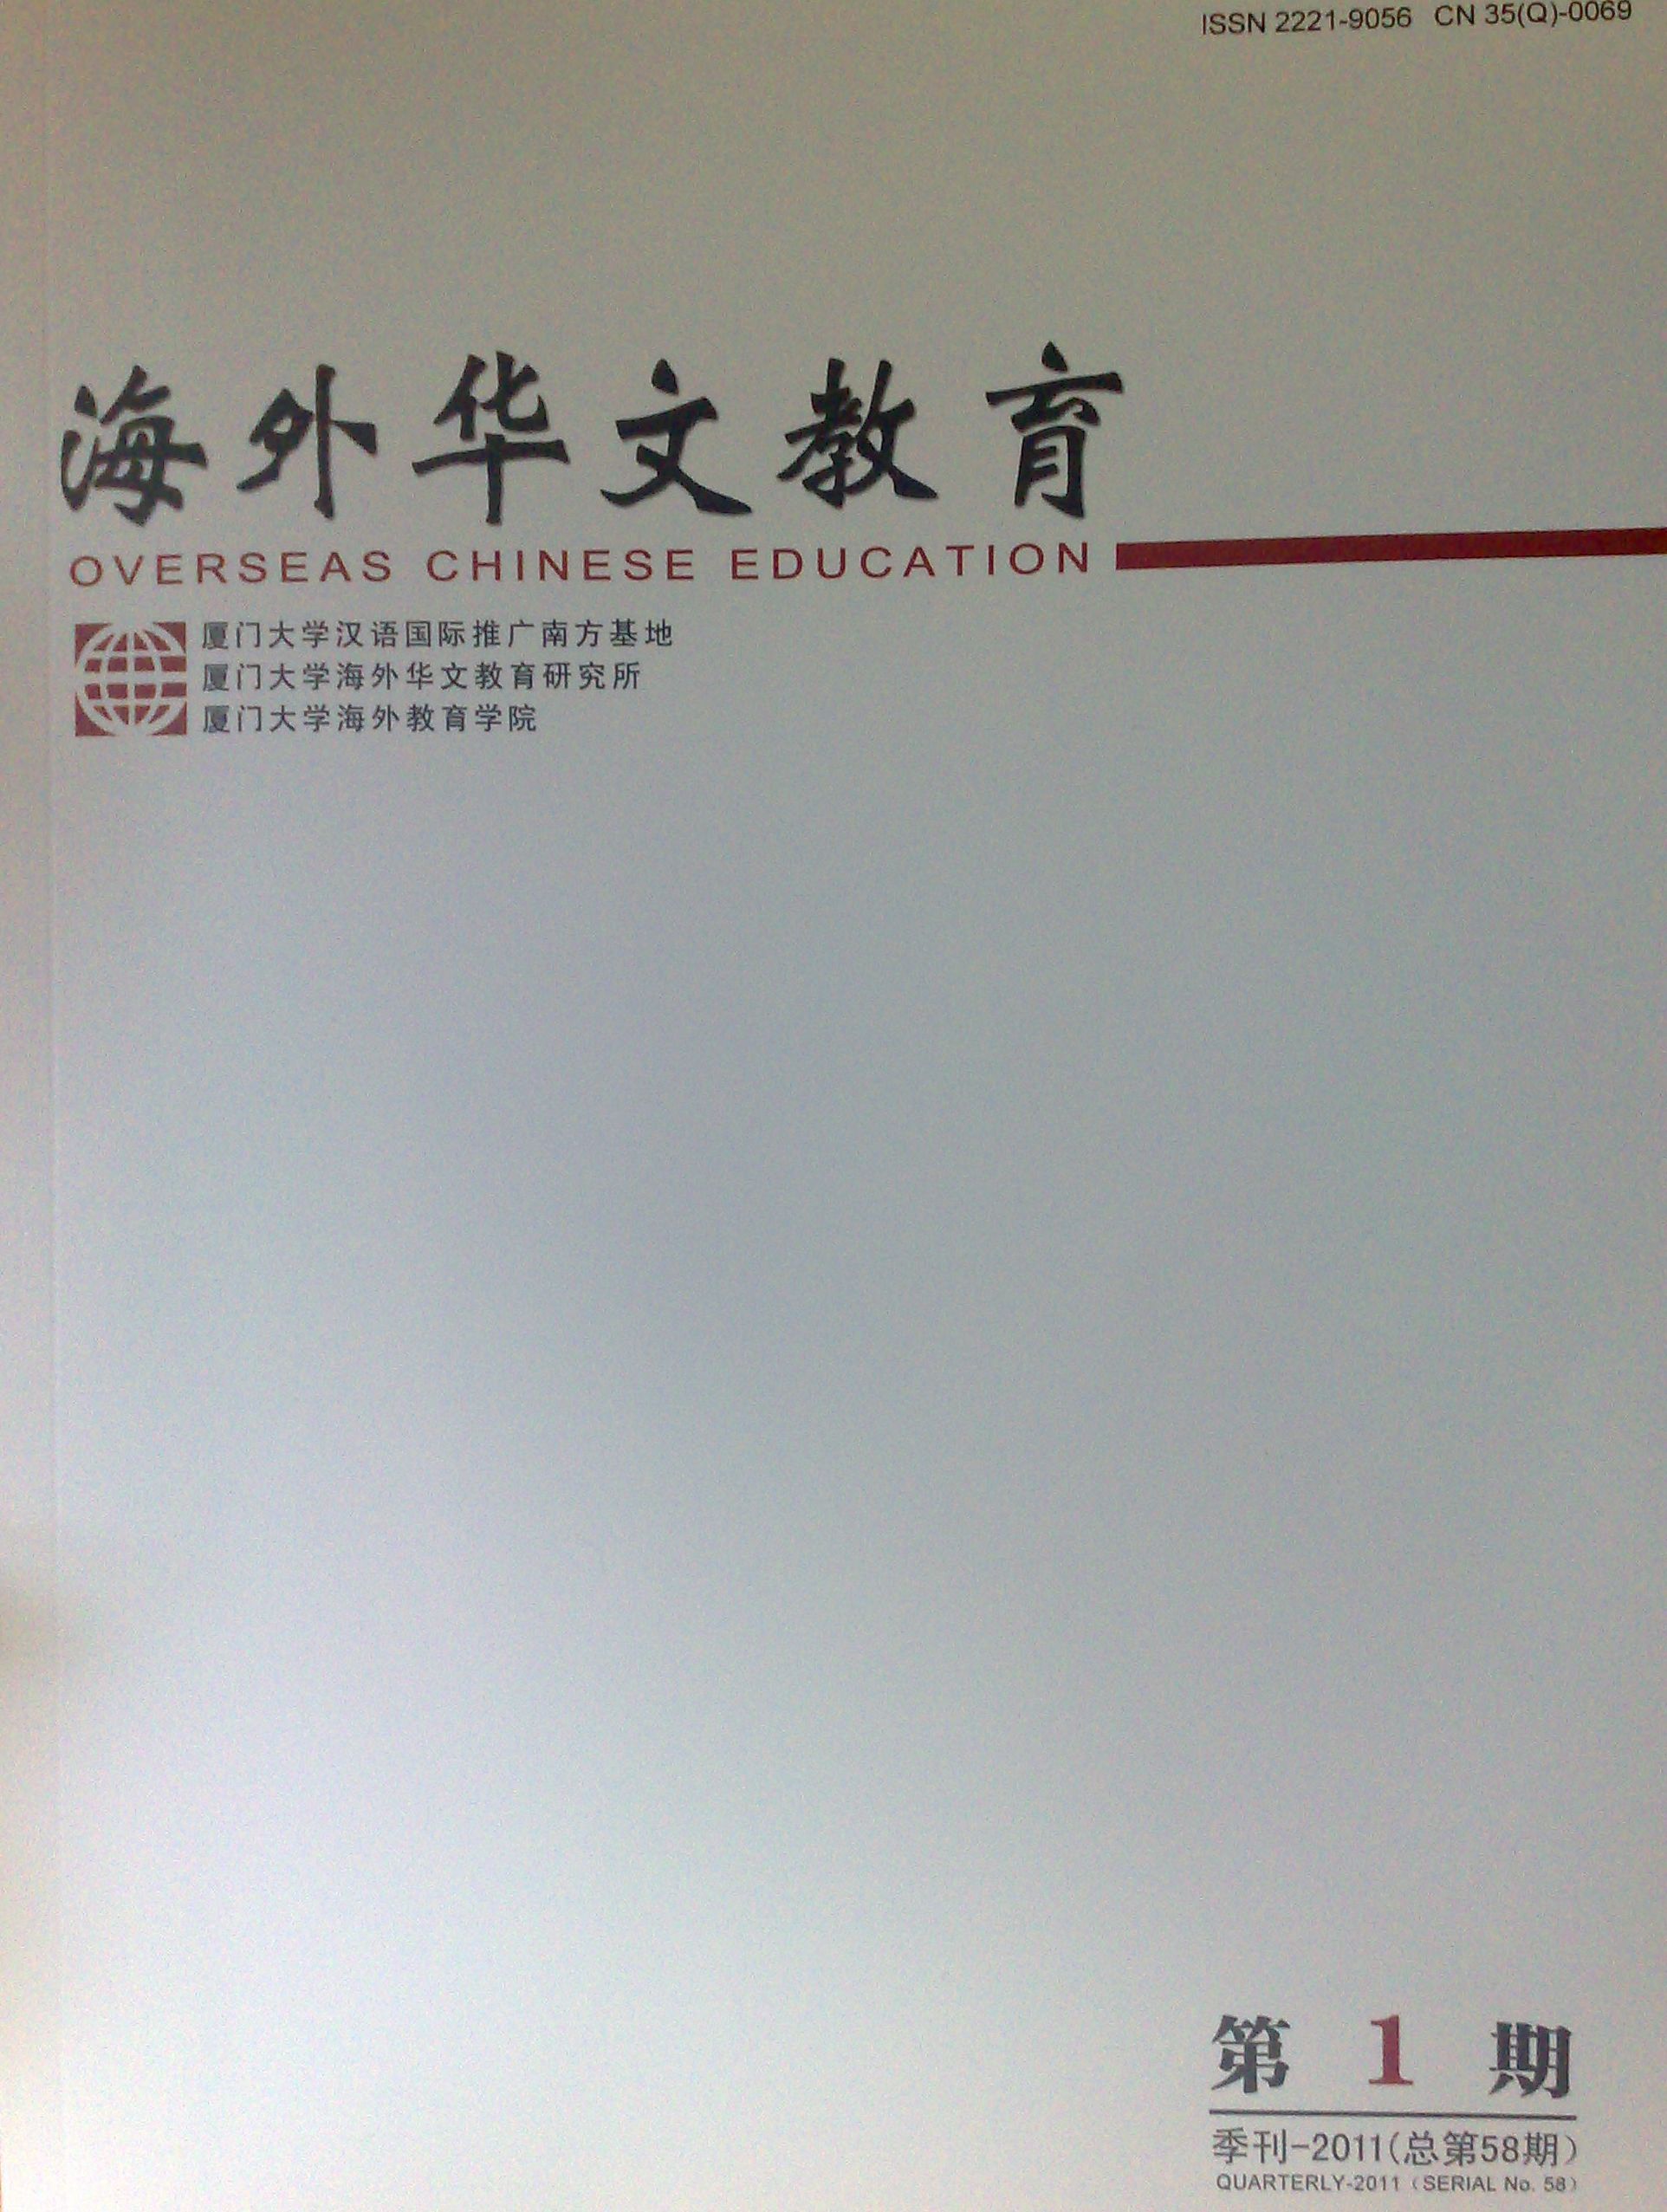 新版《海外華文教育》